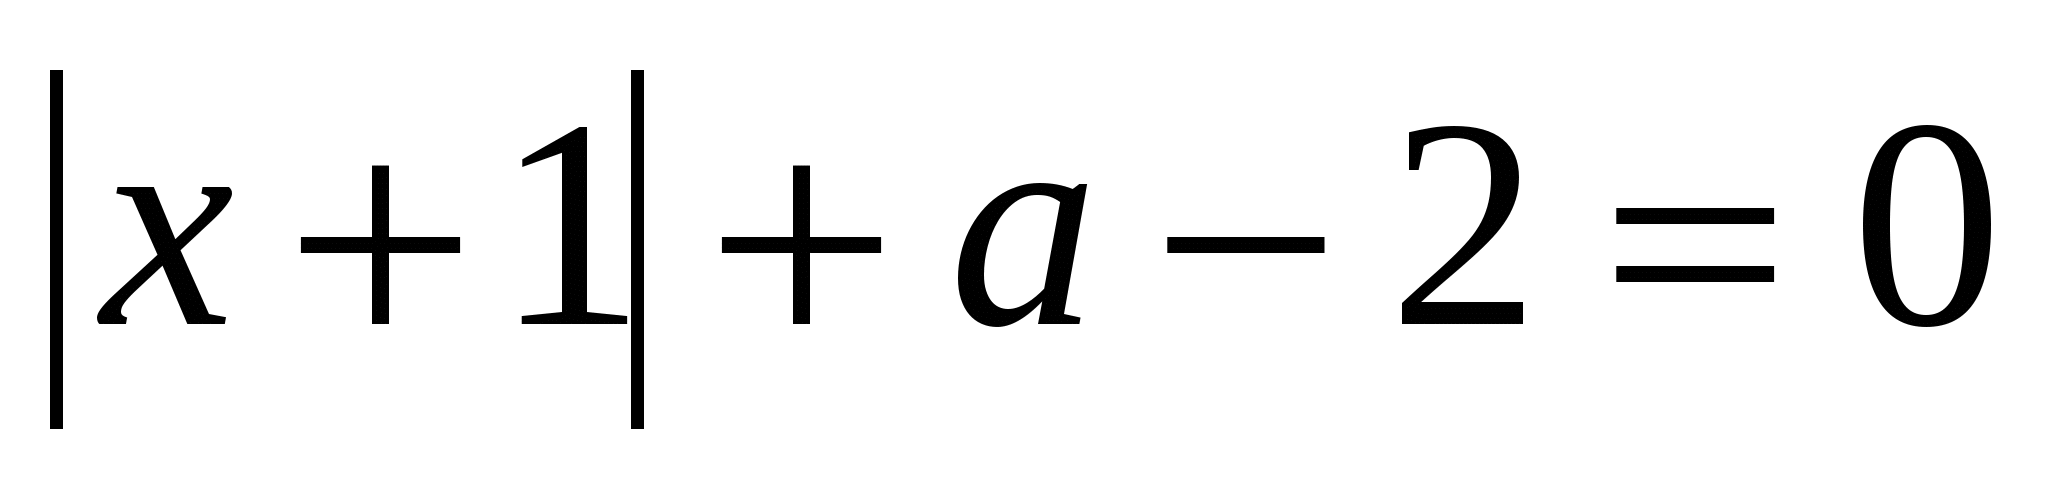 Роз`язування рівнянь і нерівностей з параметрами